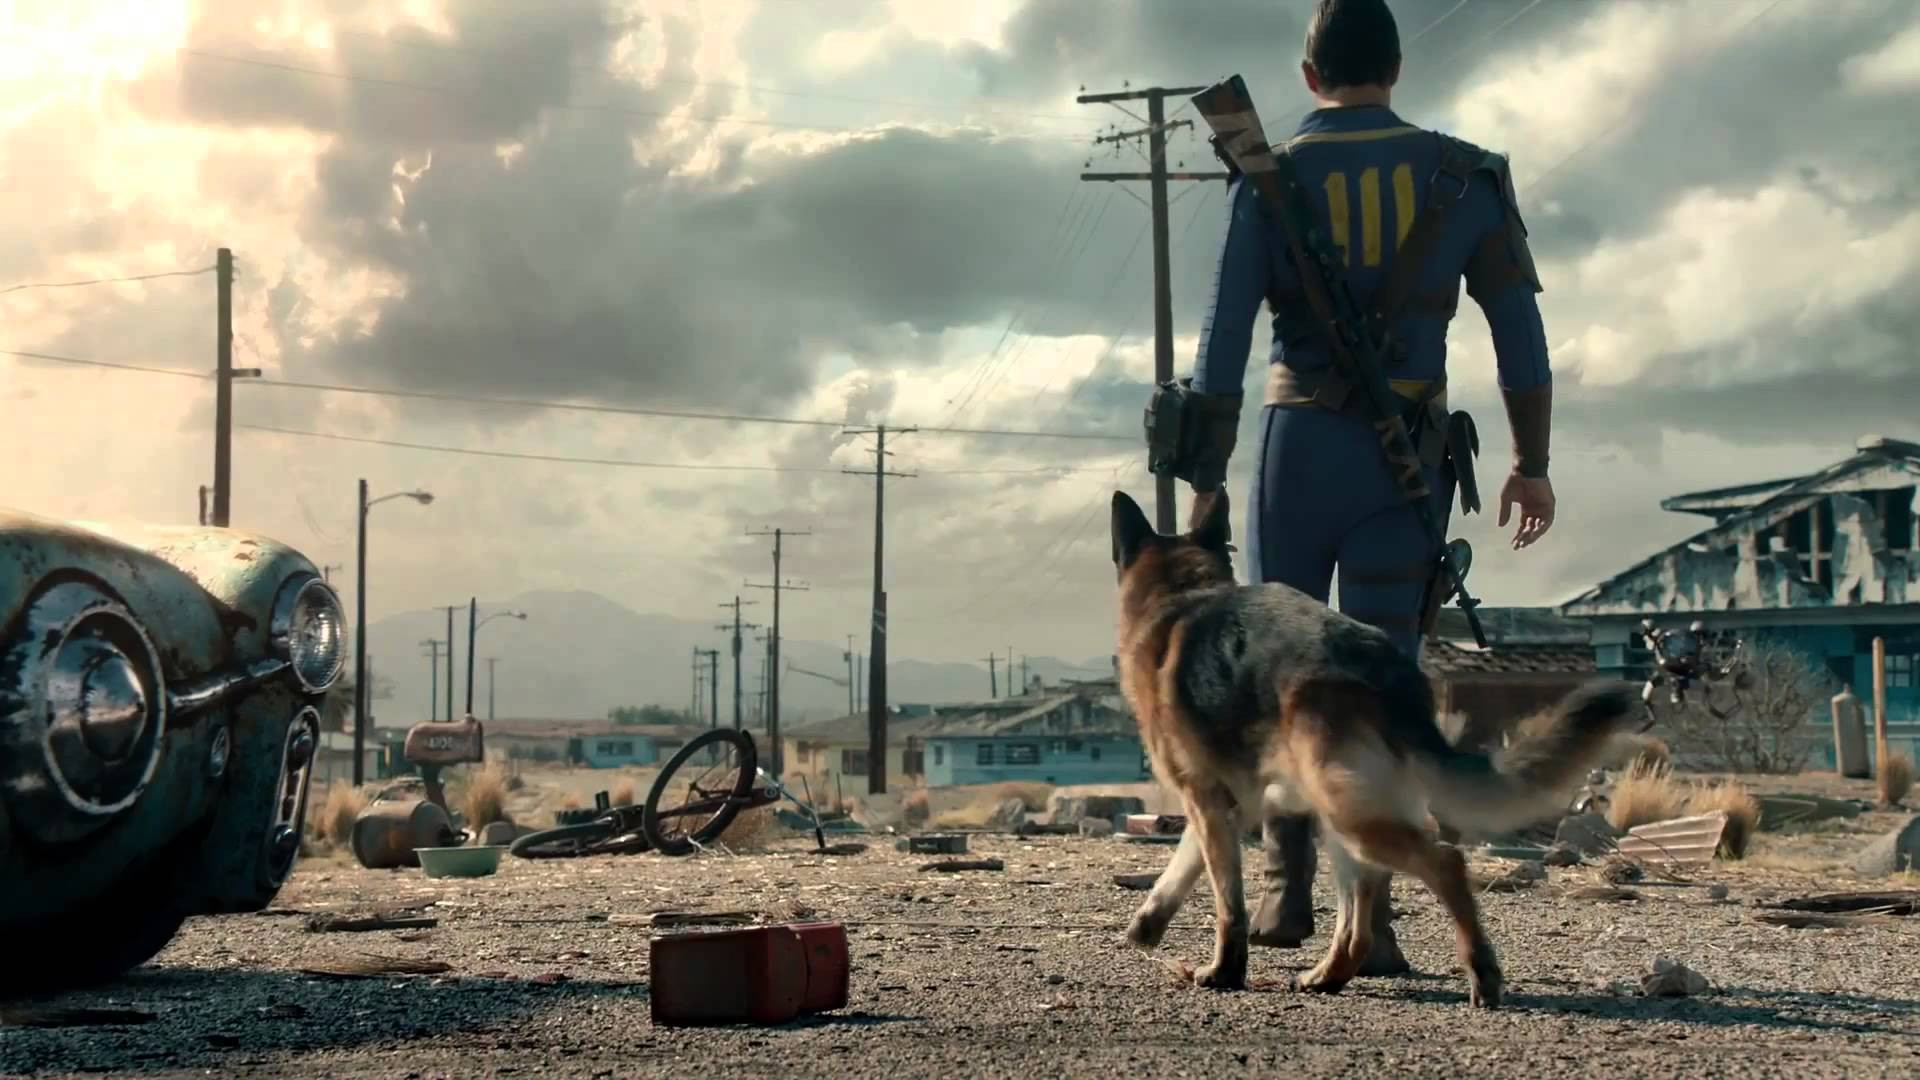 Tout ce que l'on sait à l'heure actuelle sur la série Fallout par Amazon Prime Vidéo